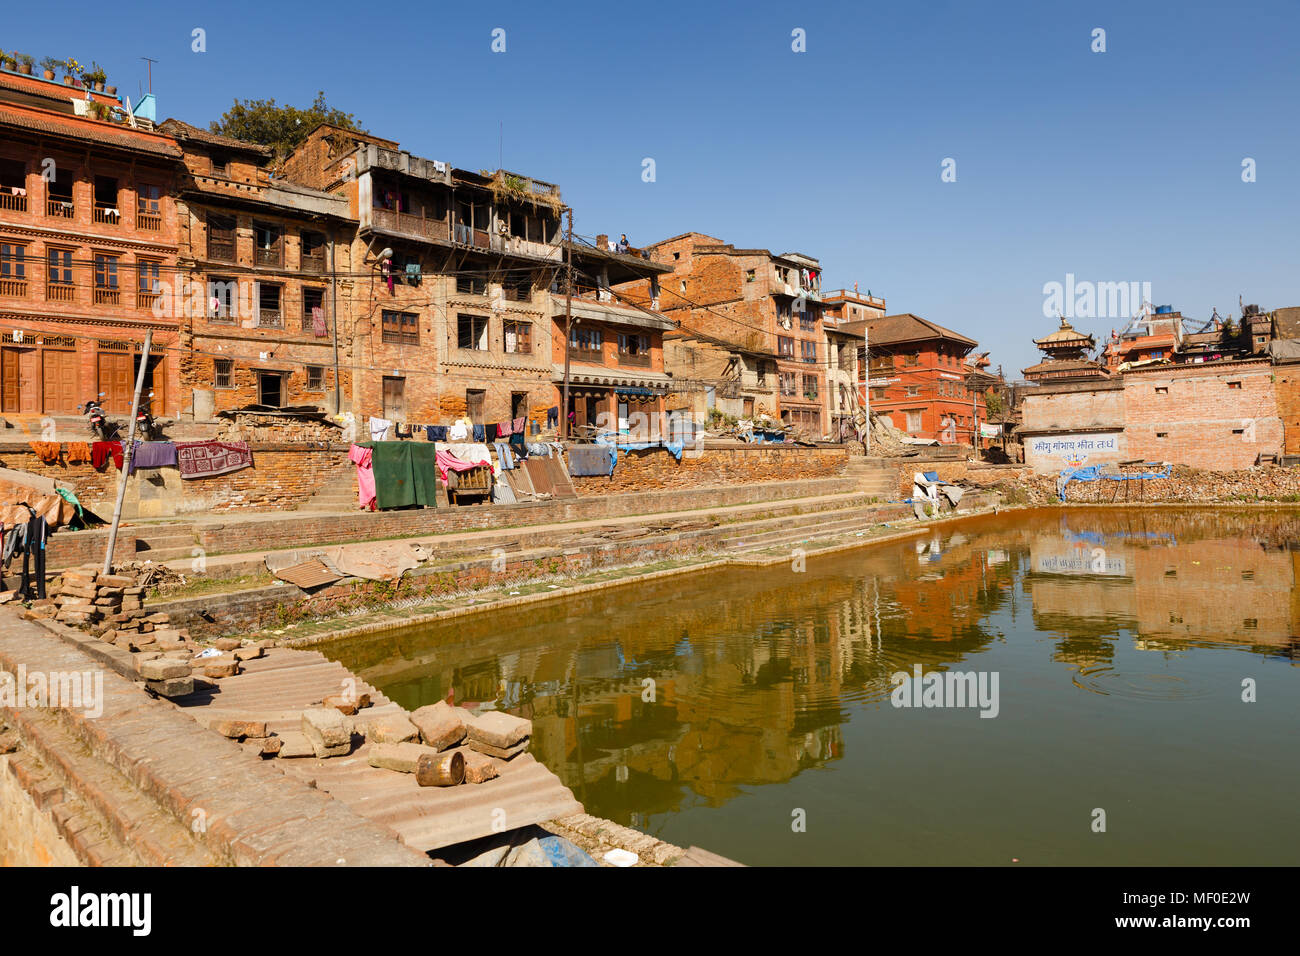 BHAKTAPUR, Nepal - November 15, 2016: traditionellen nepalesischen newar Häuser in der Nähe des grünen Teich in Bhaktapur, Nepal Stockfoto